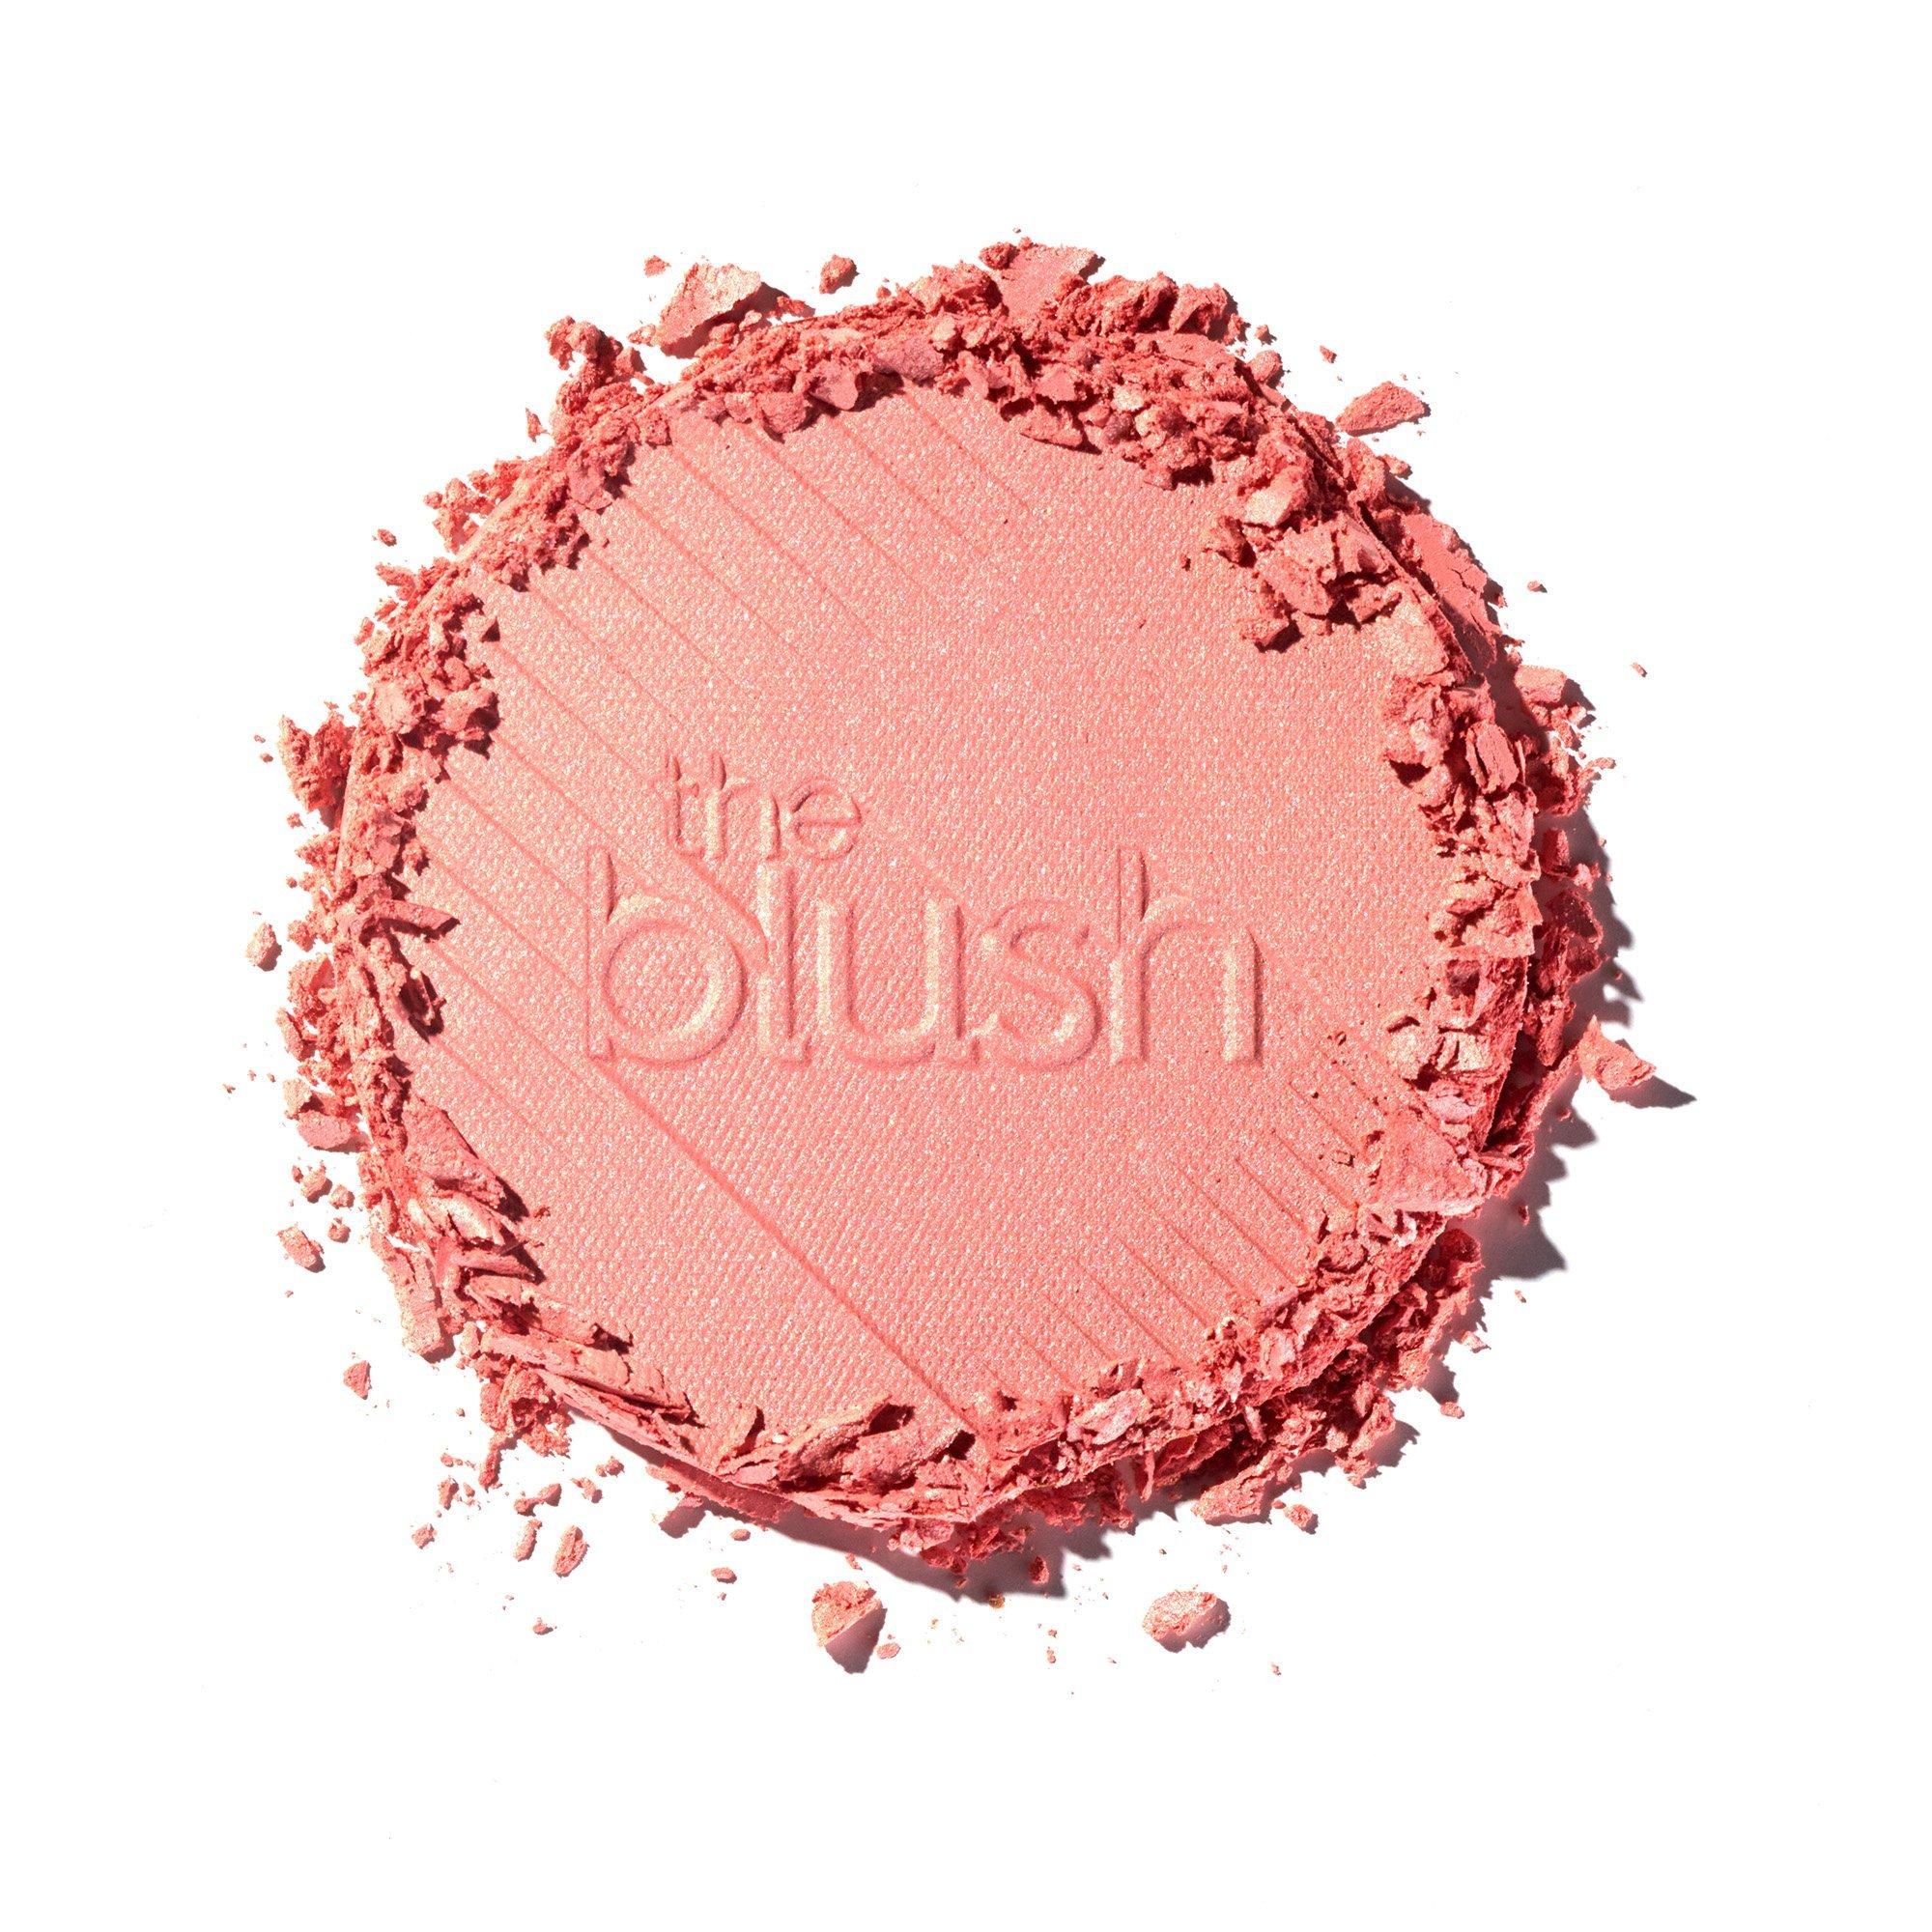 the blush colorete